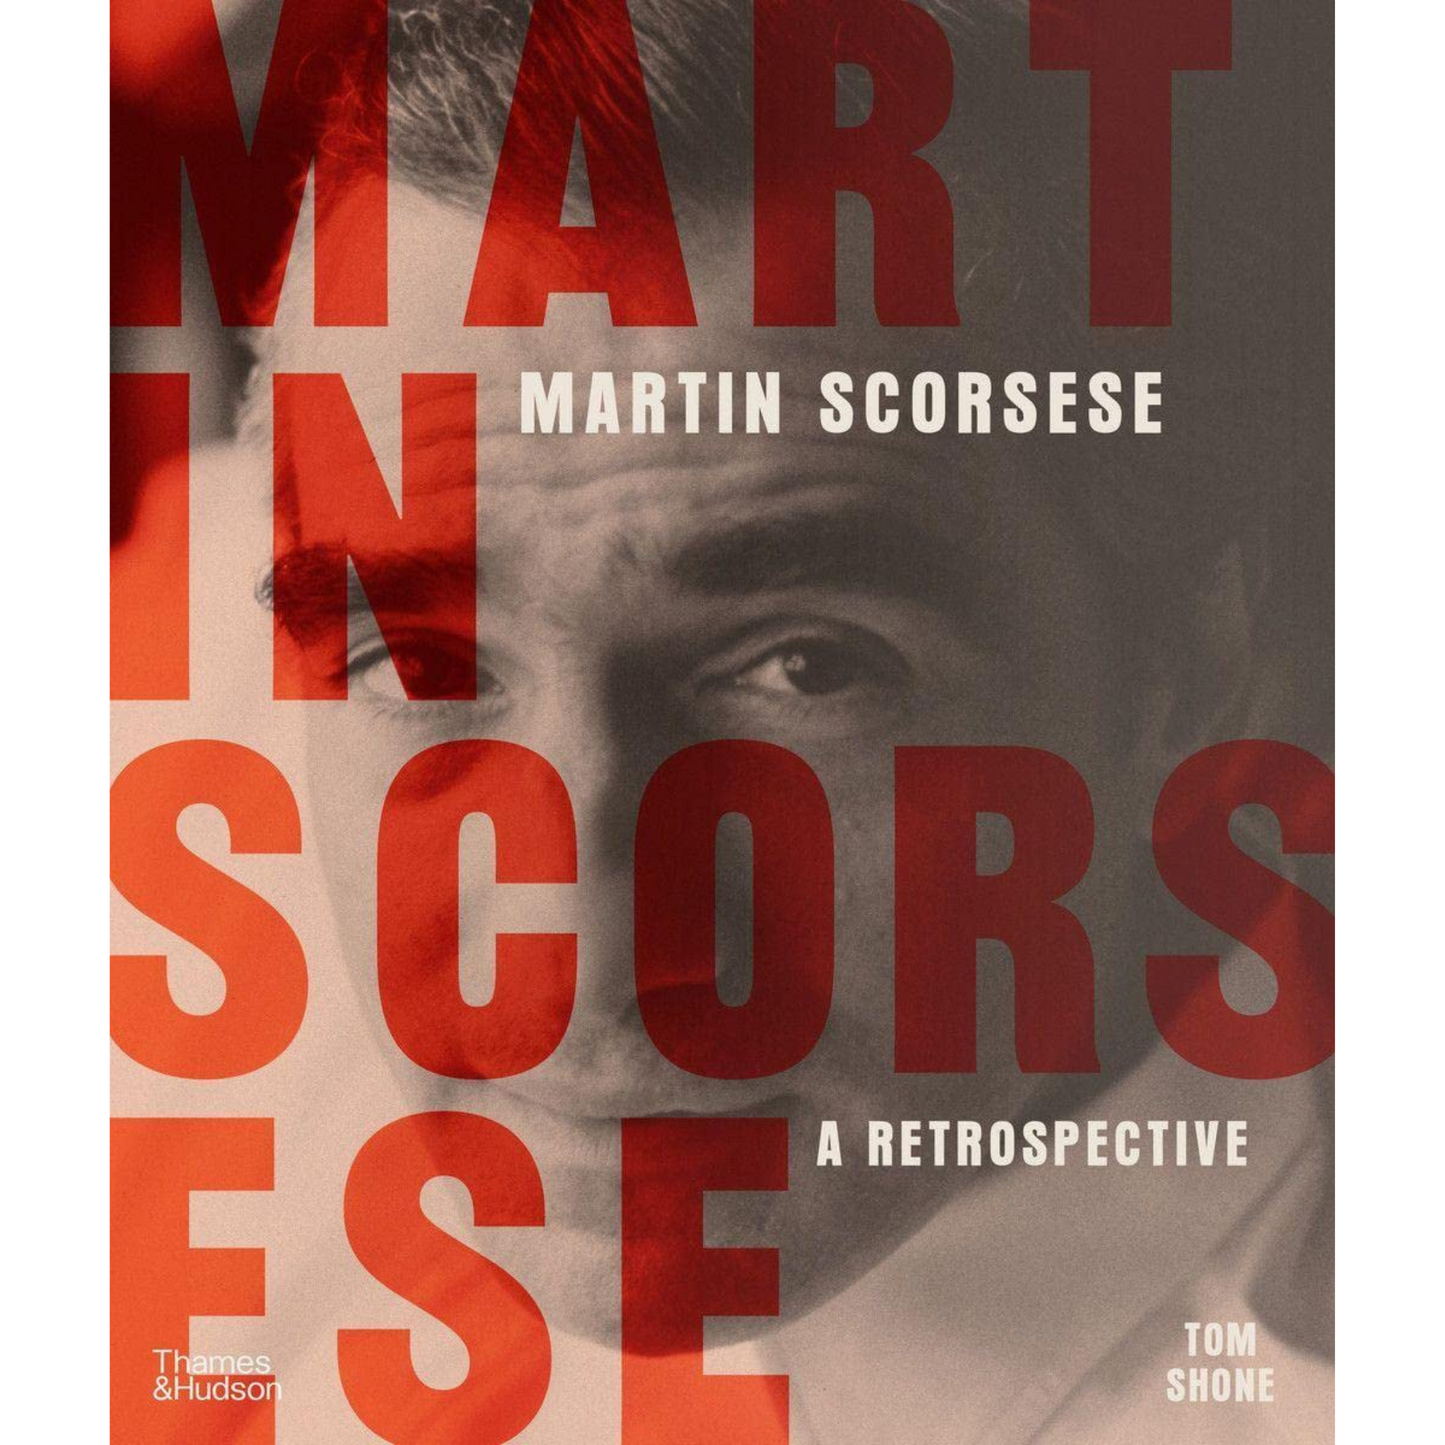 Martin Scorsese: a retrospective